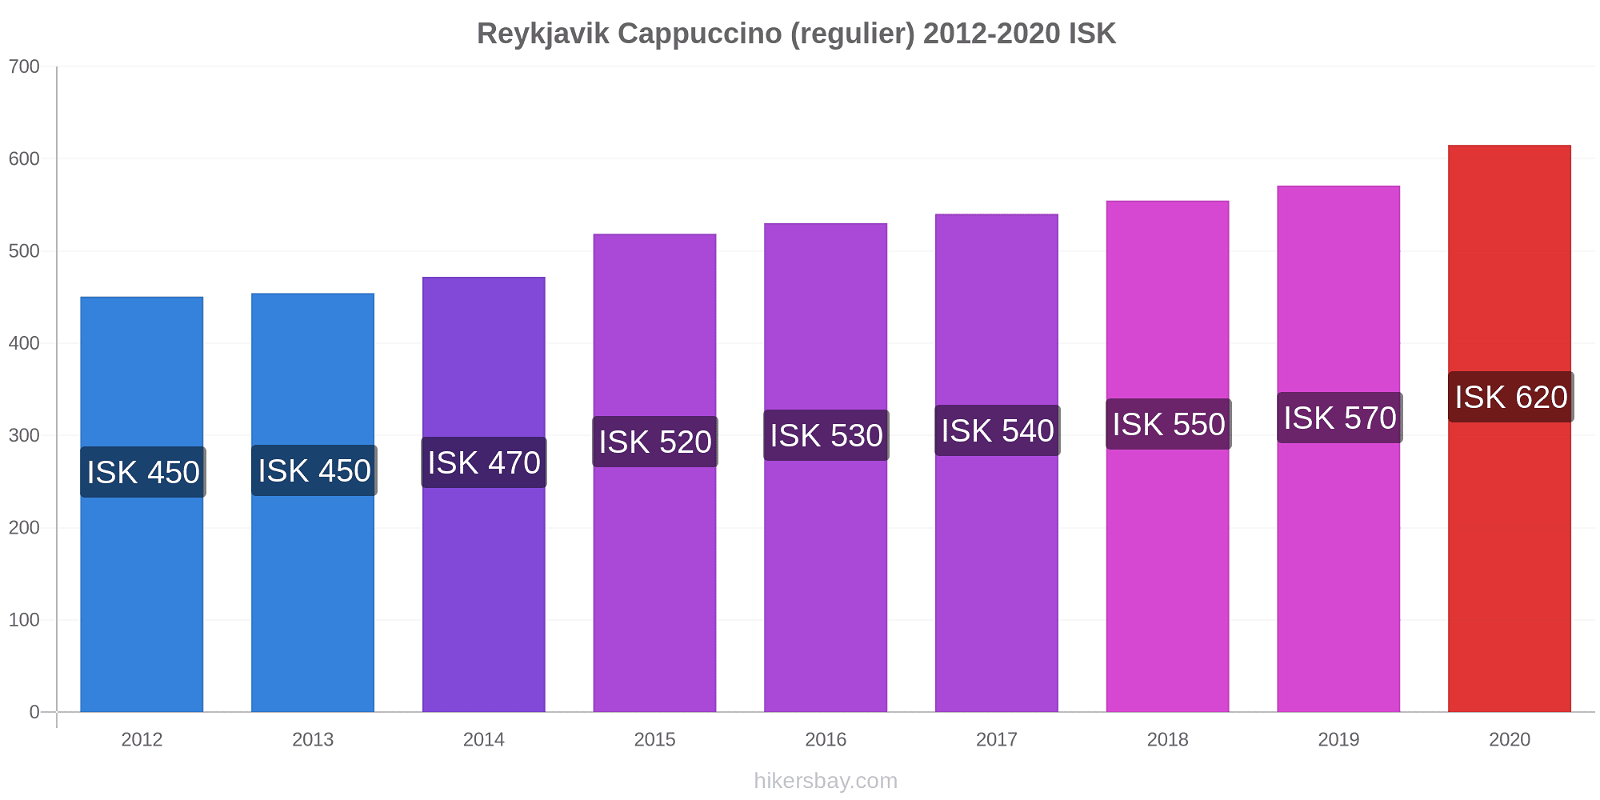 Reykjavik prijswijzigingen Cappuccino (regelmatige) hikersbay.com